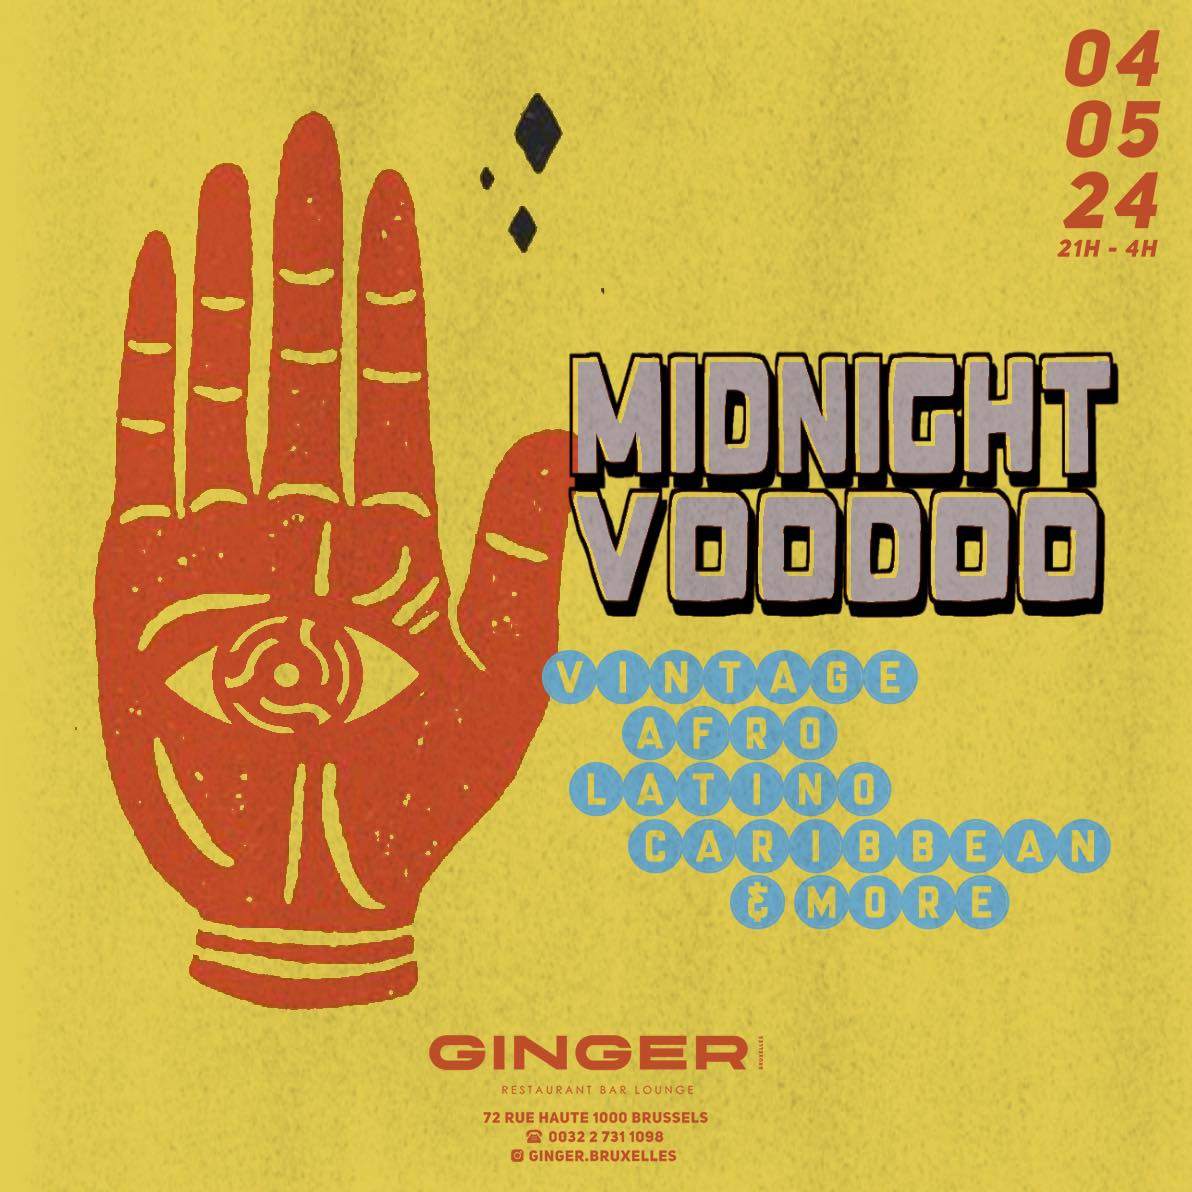 Midnight Voodoo at Ginger - フライヤー表